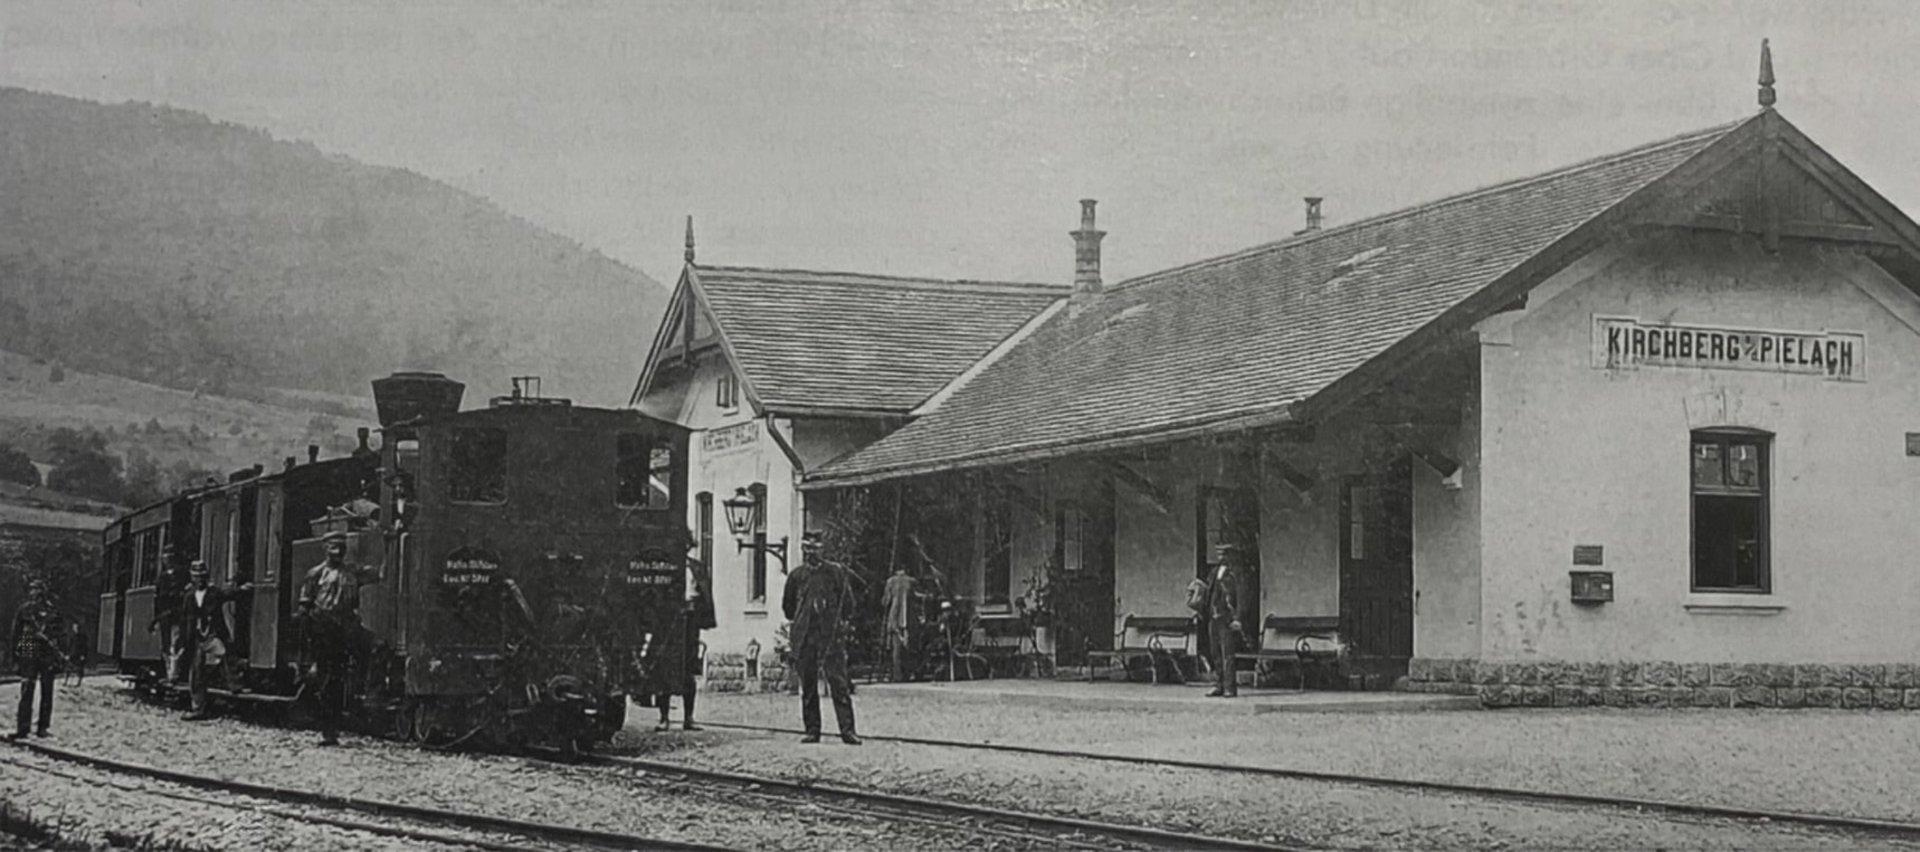 125 Jahre Pielachtalbahn: Große Geschichte auf schmaler Spur